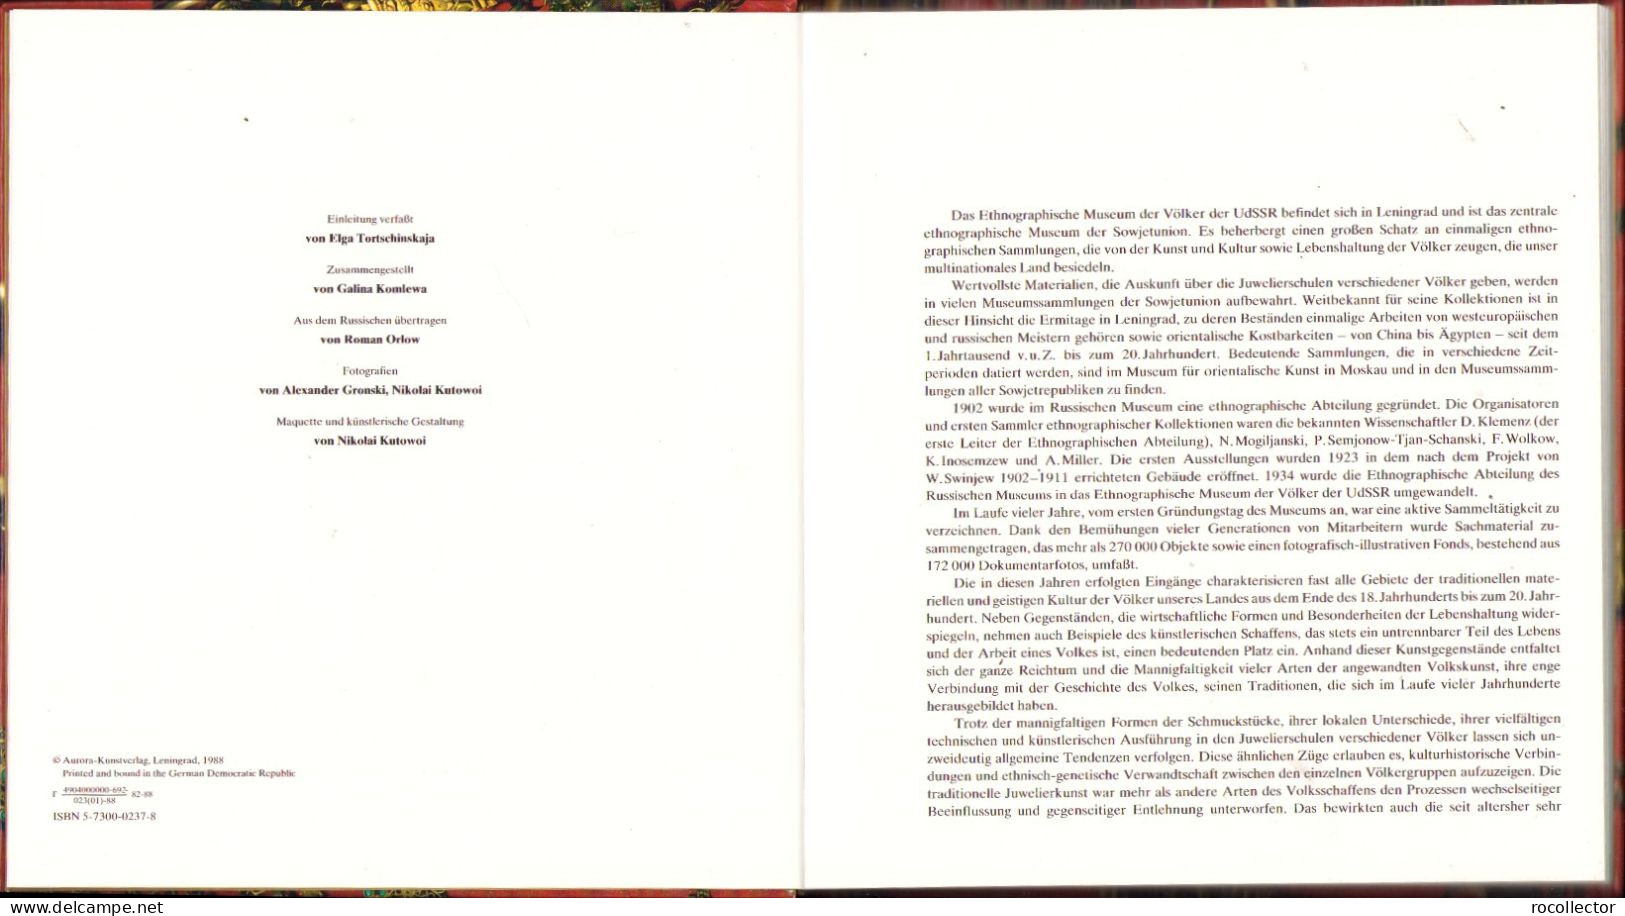 Juwelier-erzeugnisse Zusammengestelt Von Galina Komleva 1988 Ethnographisches Museum Der Völker Der UdSSR Leningrad - Old Books